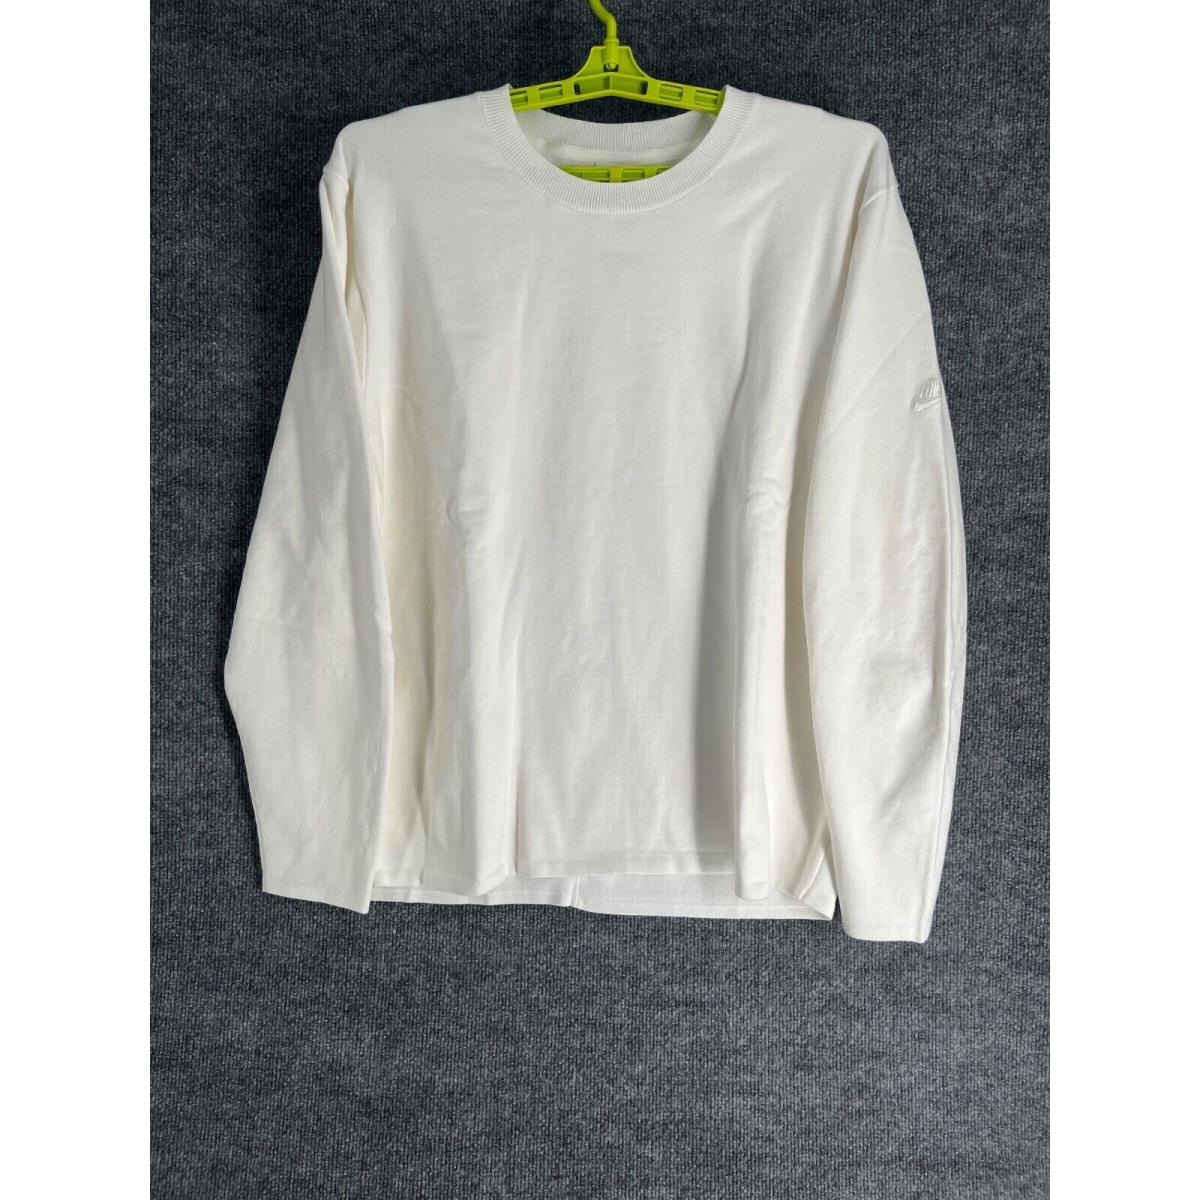 Nike Sweatshirt Men Size XL White Tech Pack Therma-fit Adv Fleece Crew